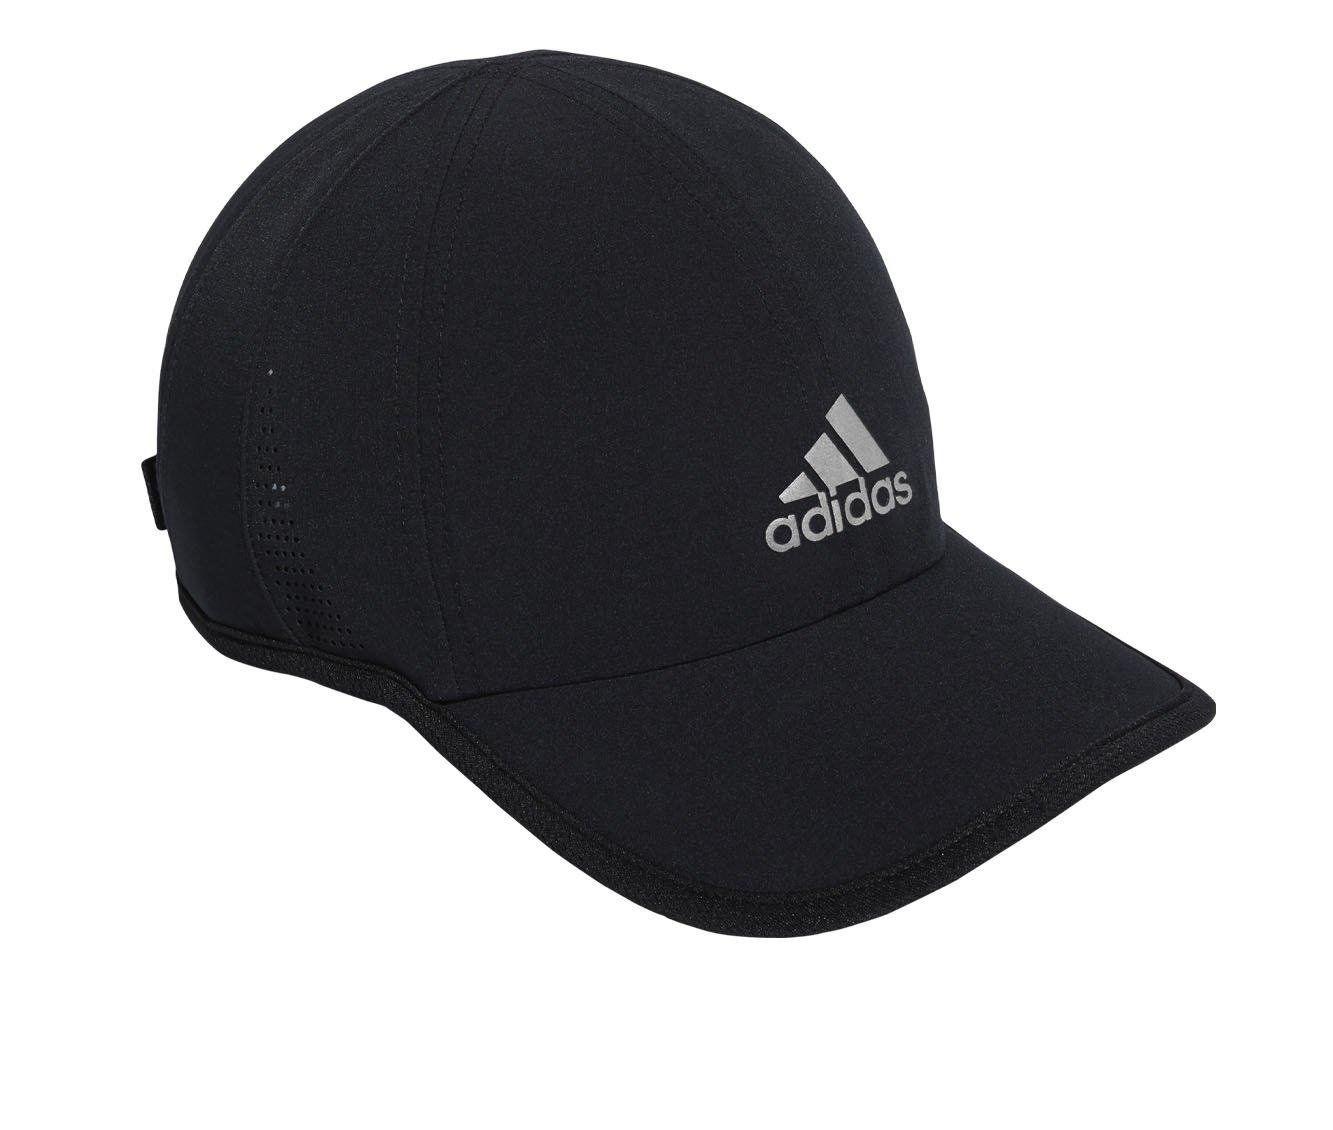 Adidas Men's Superlite II Cap